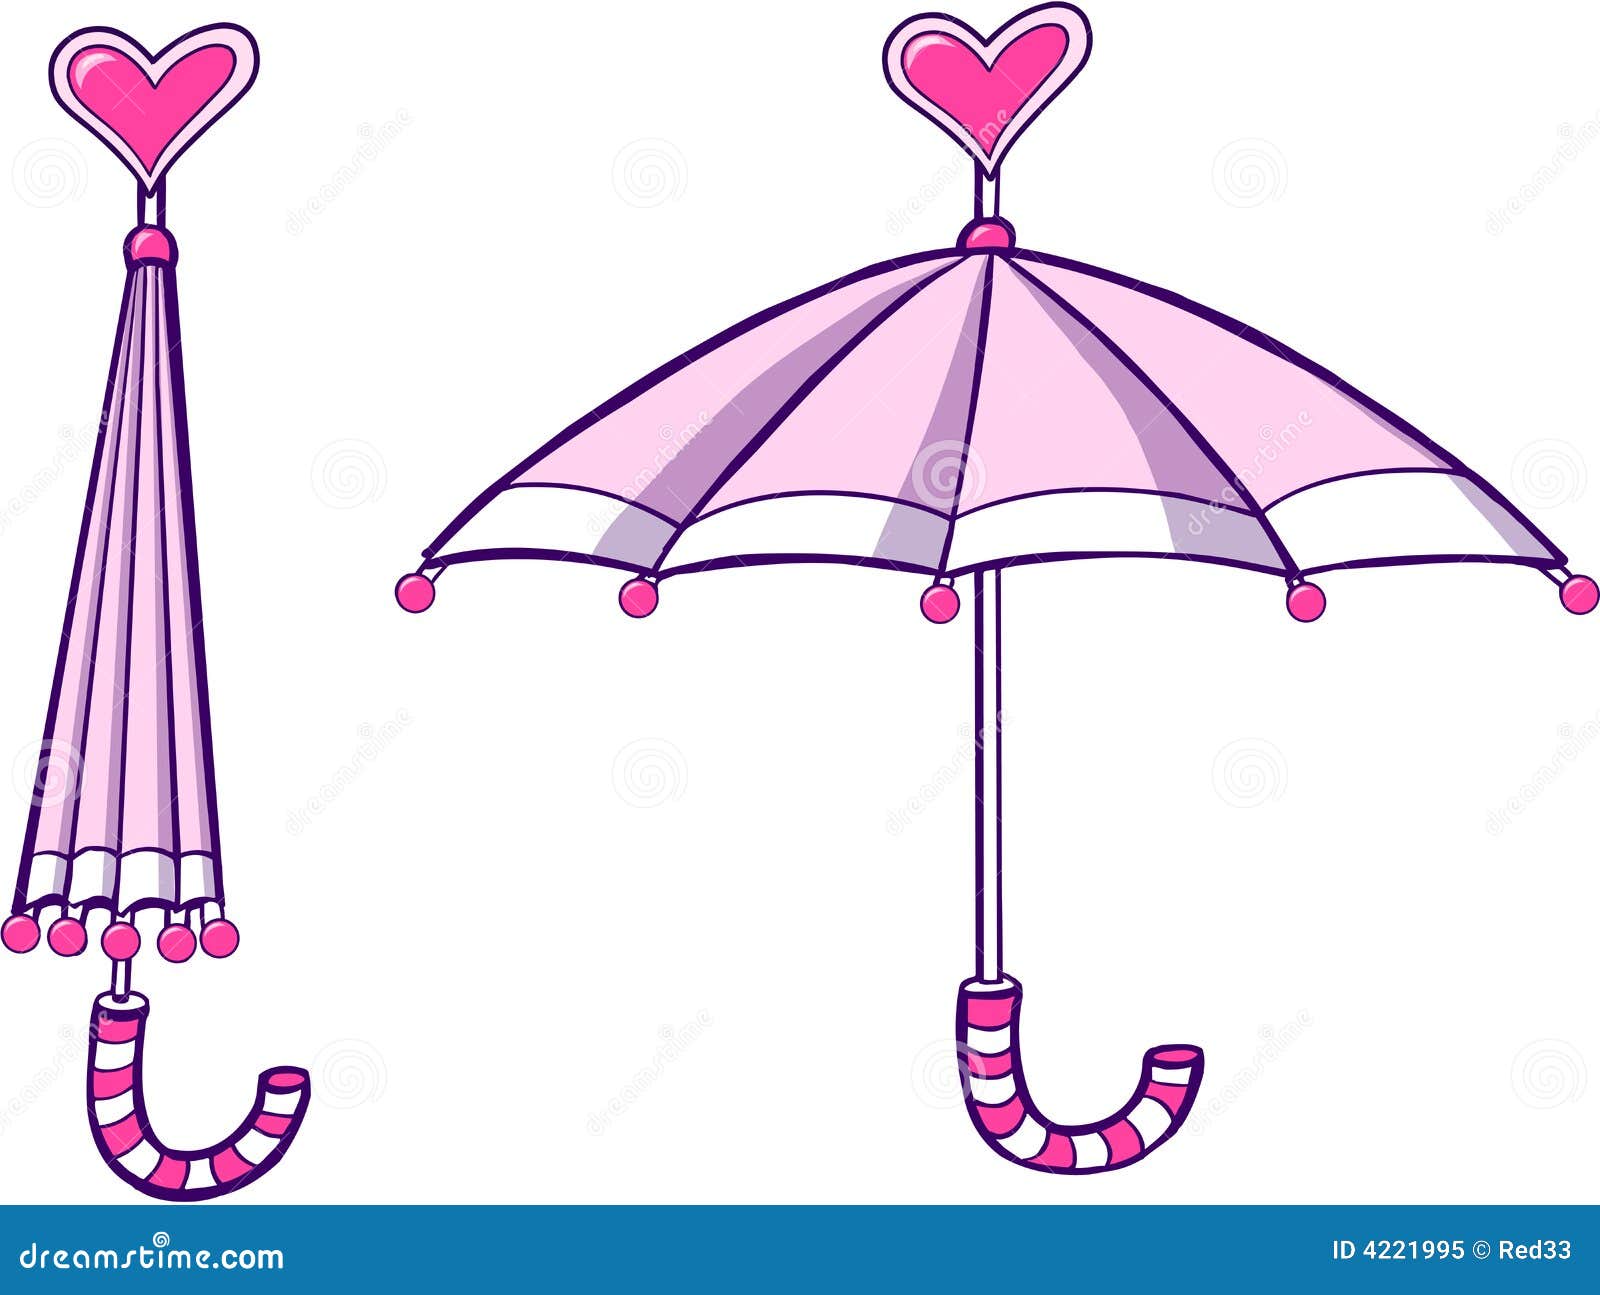 pink umbrella clip art - photo #49